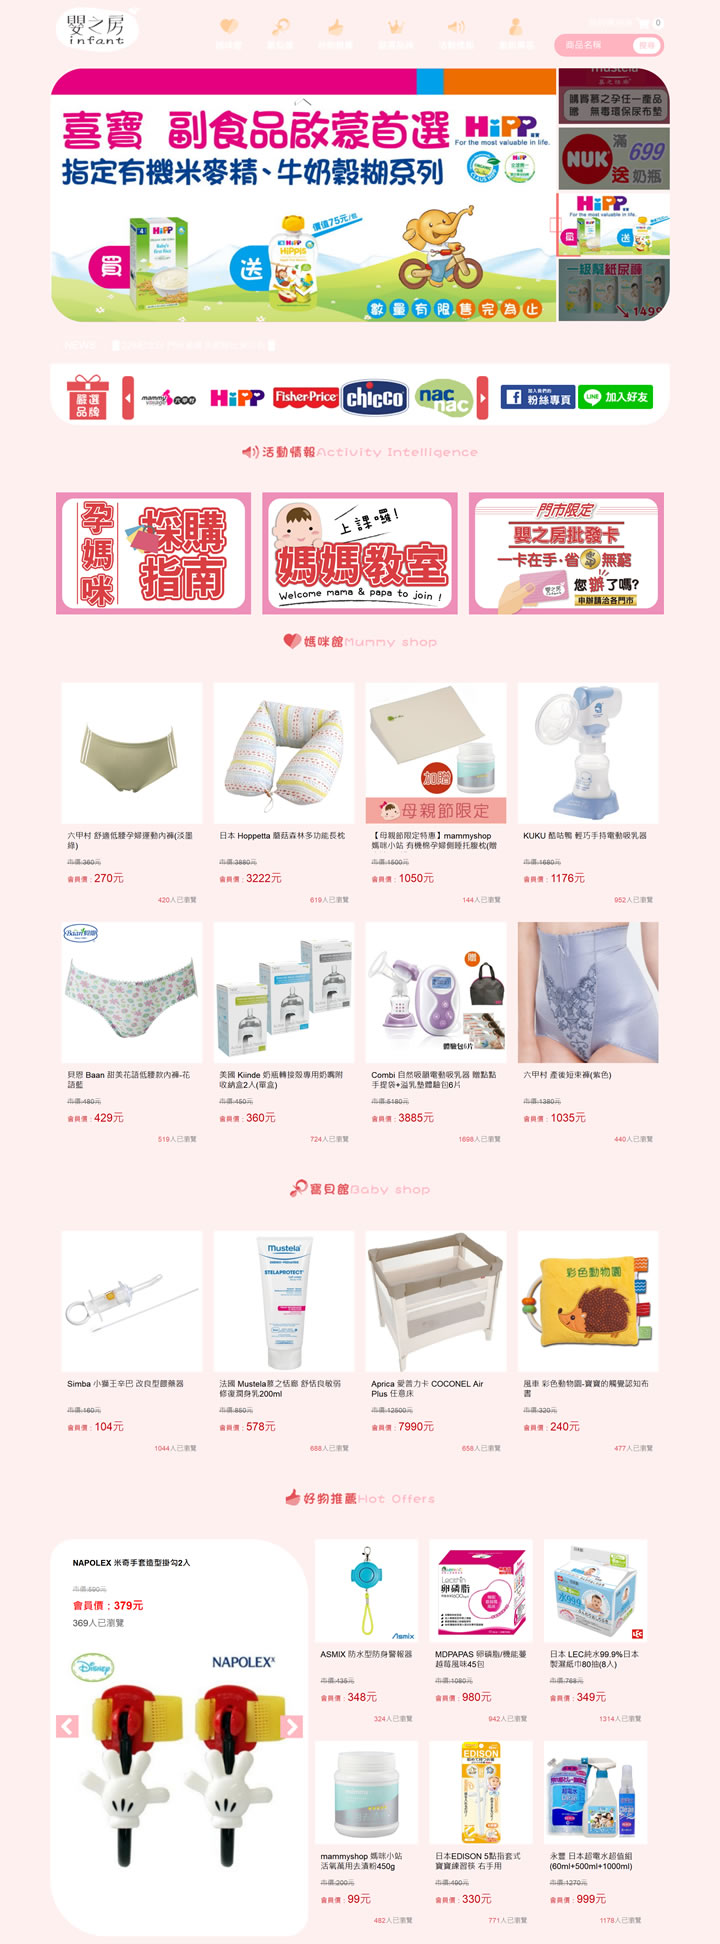 台湾母婴用品购物网站：Infant婴之房